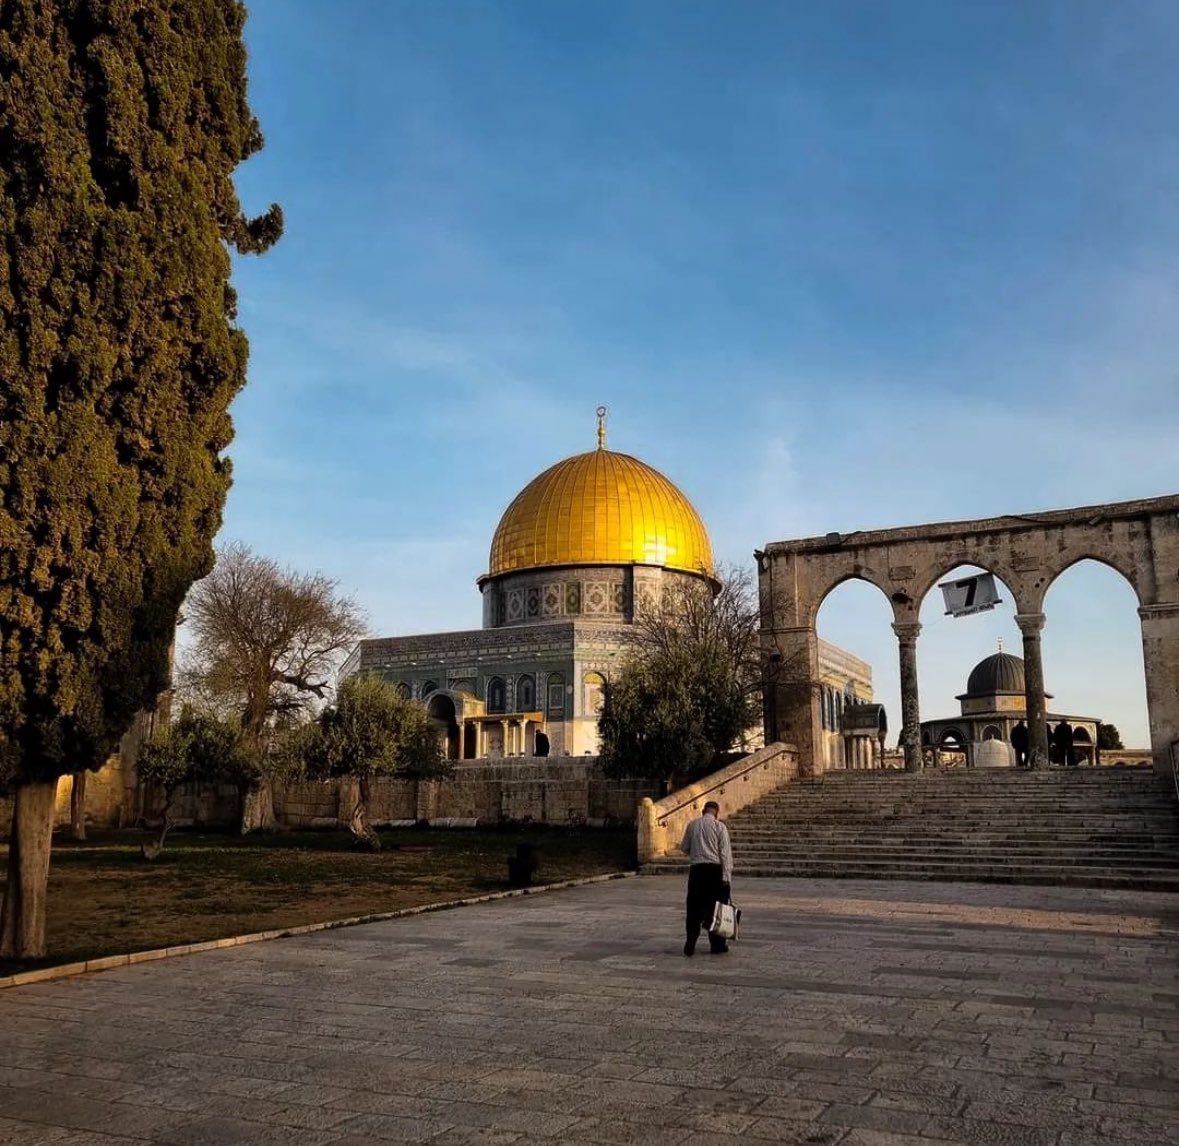 القدس، فلسـ𓂆ـطين، اليوم وغداً لنا ،،🤍
#فلسطين_تنتصر || #القدس